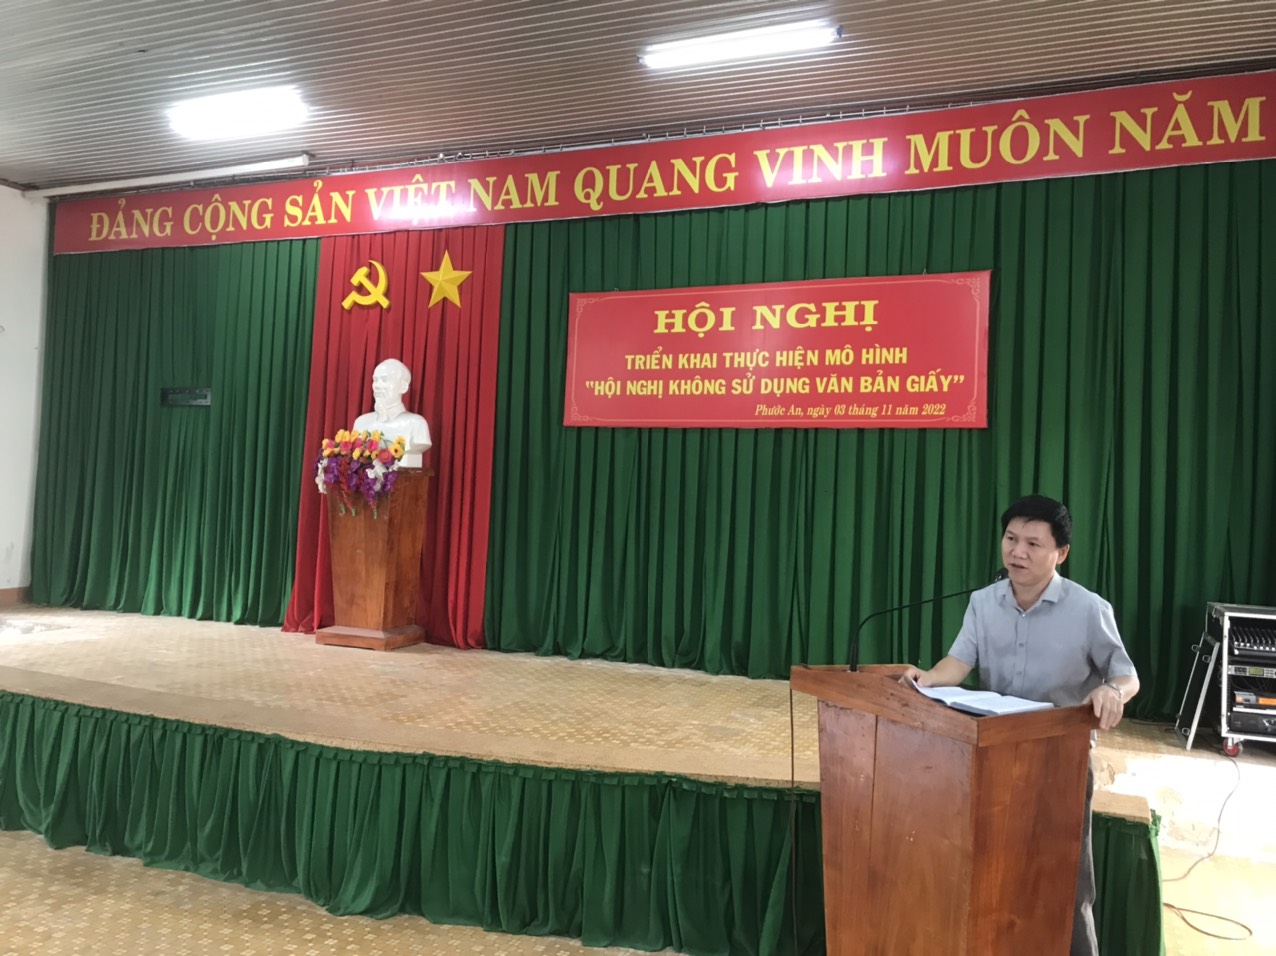 UBND thị trấn Phước An tổ chức Hội nghị triển khai thực hiện mô hình:" Hội nghị không sử dụng văn băn giấy"